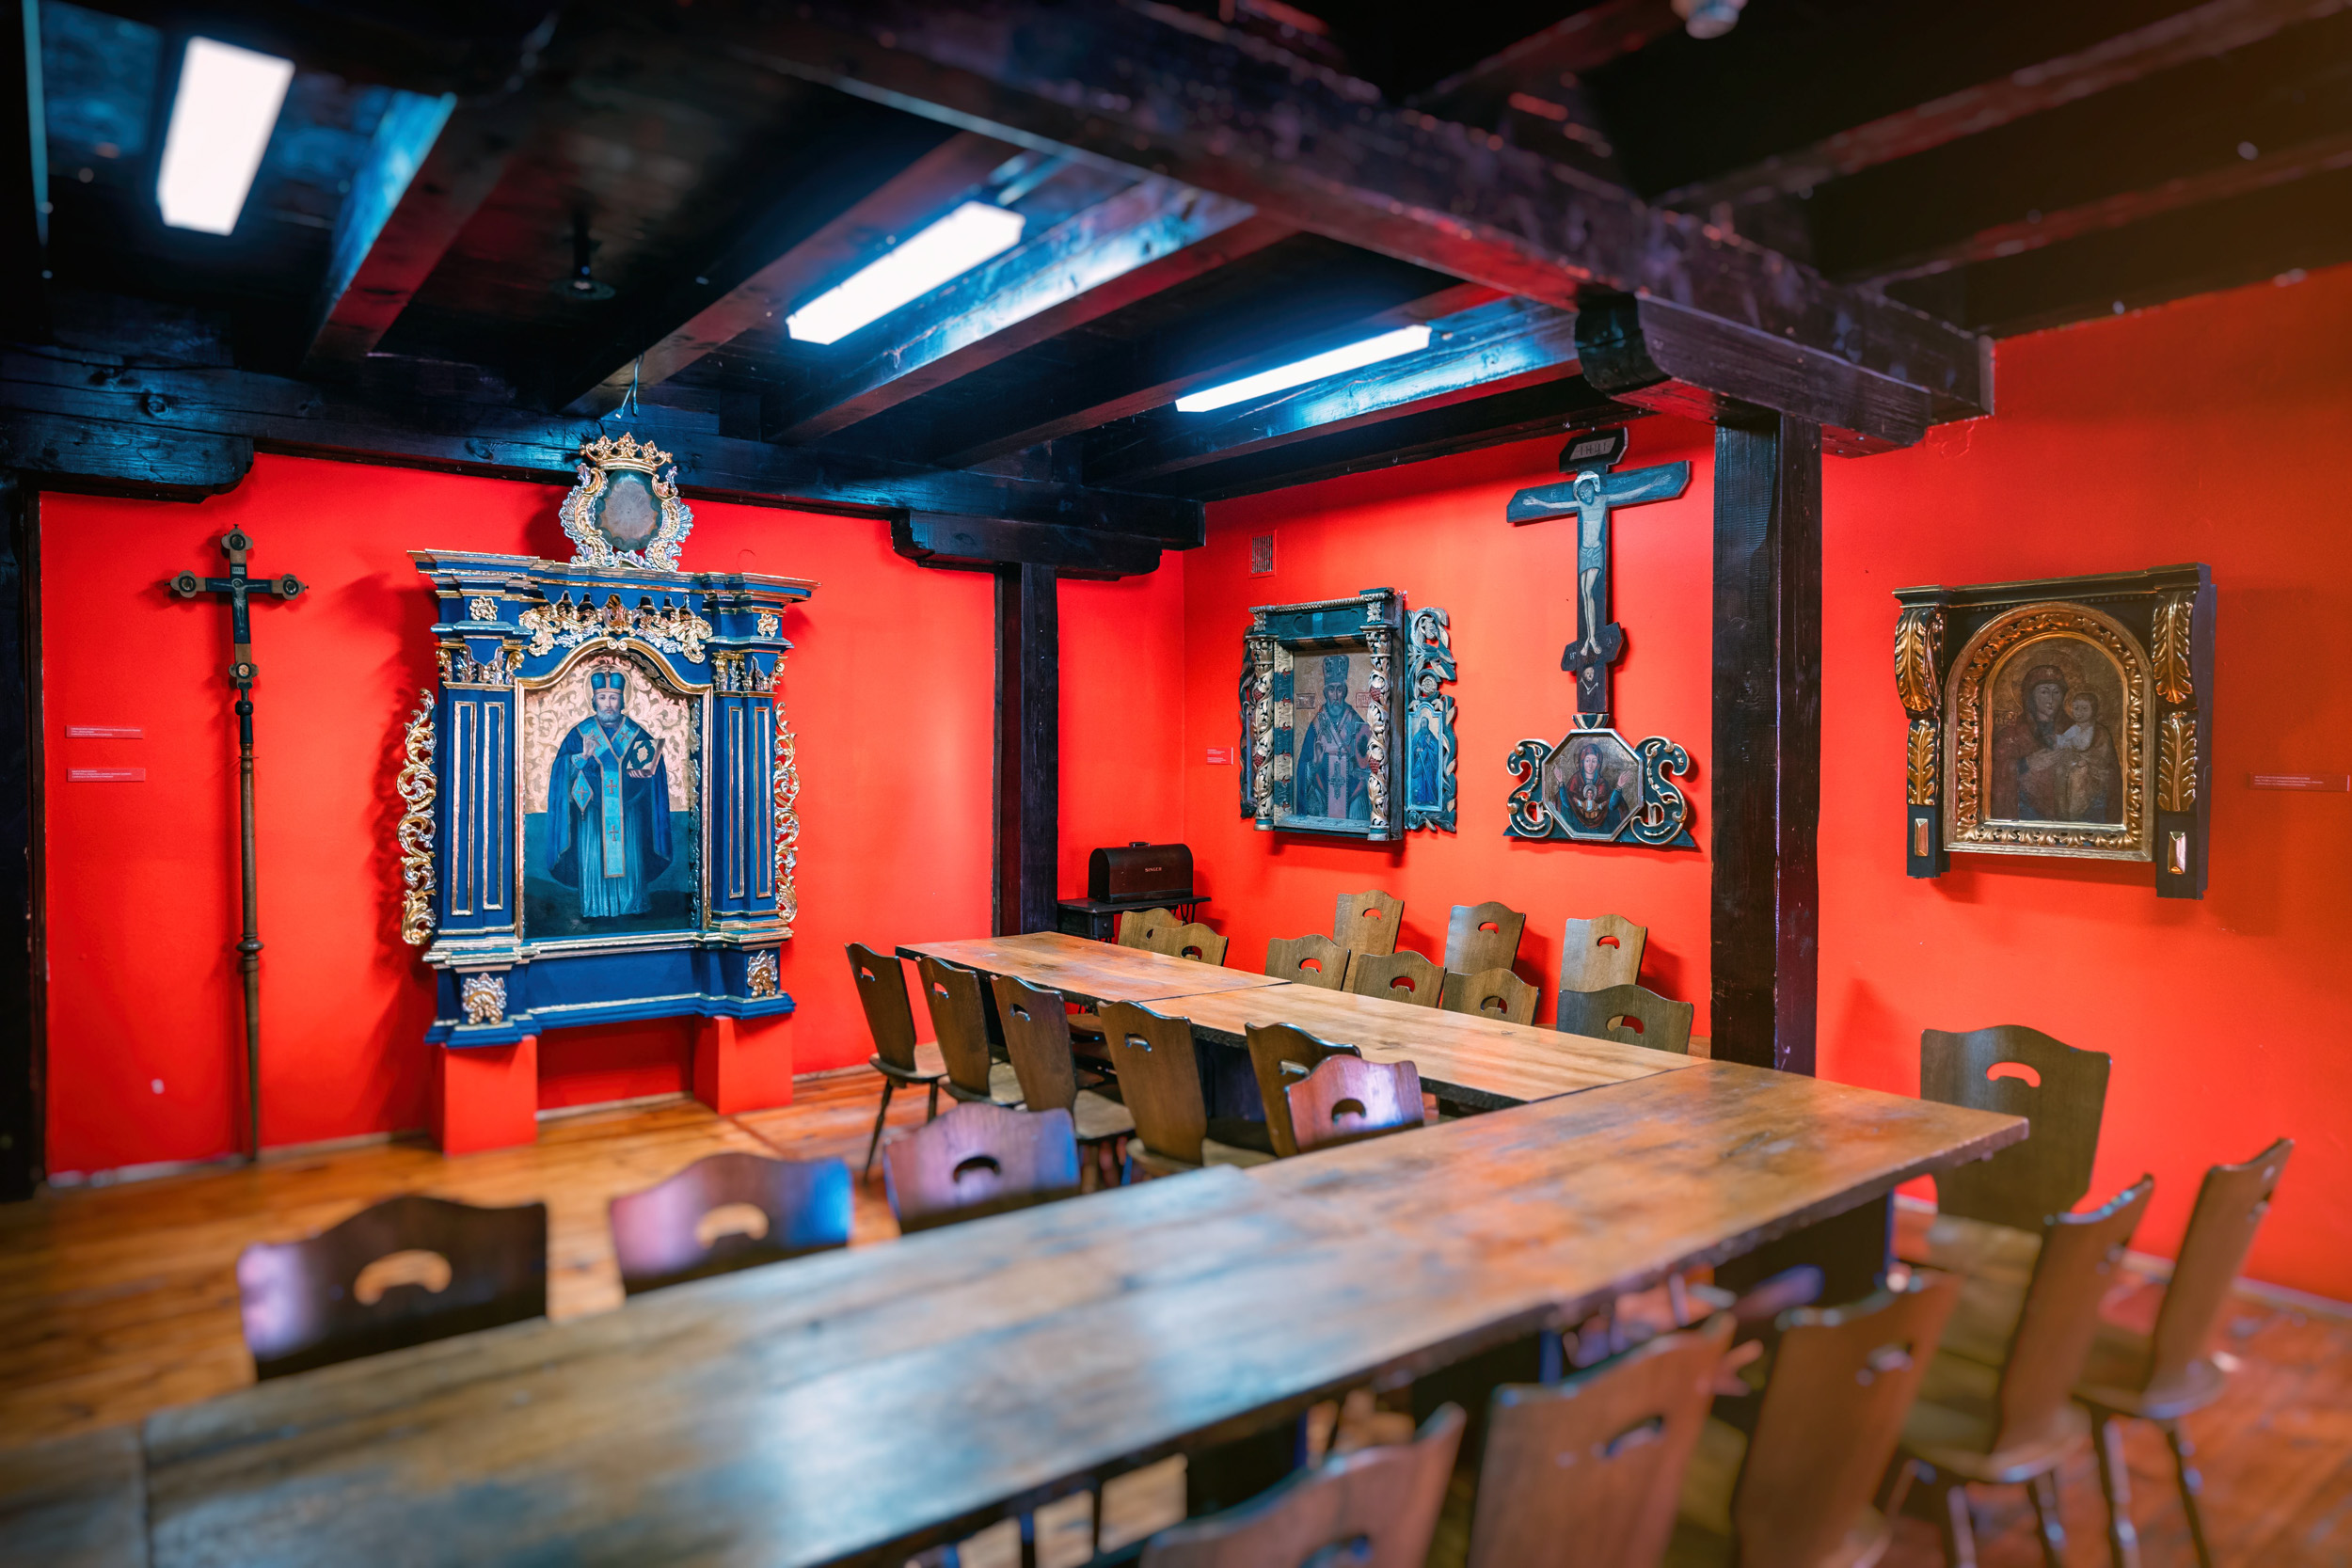 Na czerwonych ścianach zawieszone obrazy świętych, na środku sali drewniany stół z krzesłami, ciemnobrązowy drewniany sufit. 